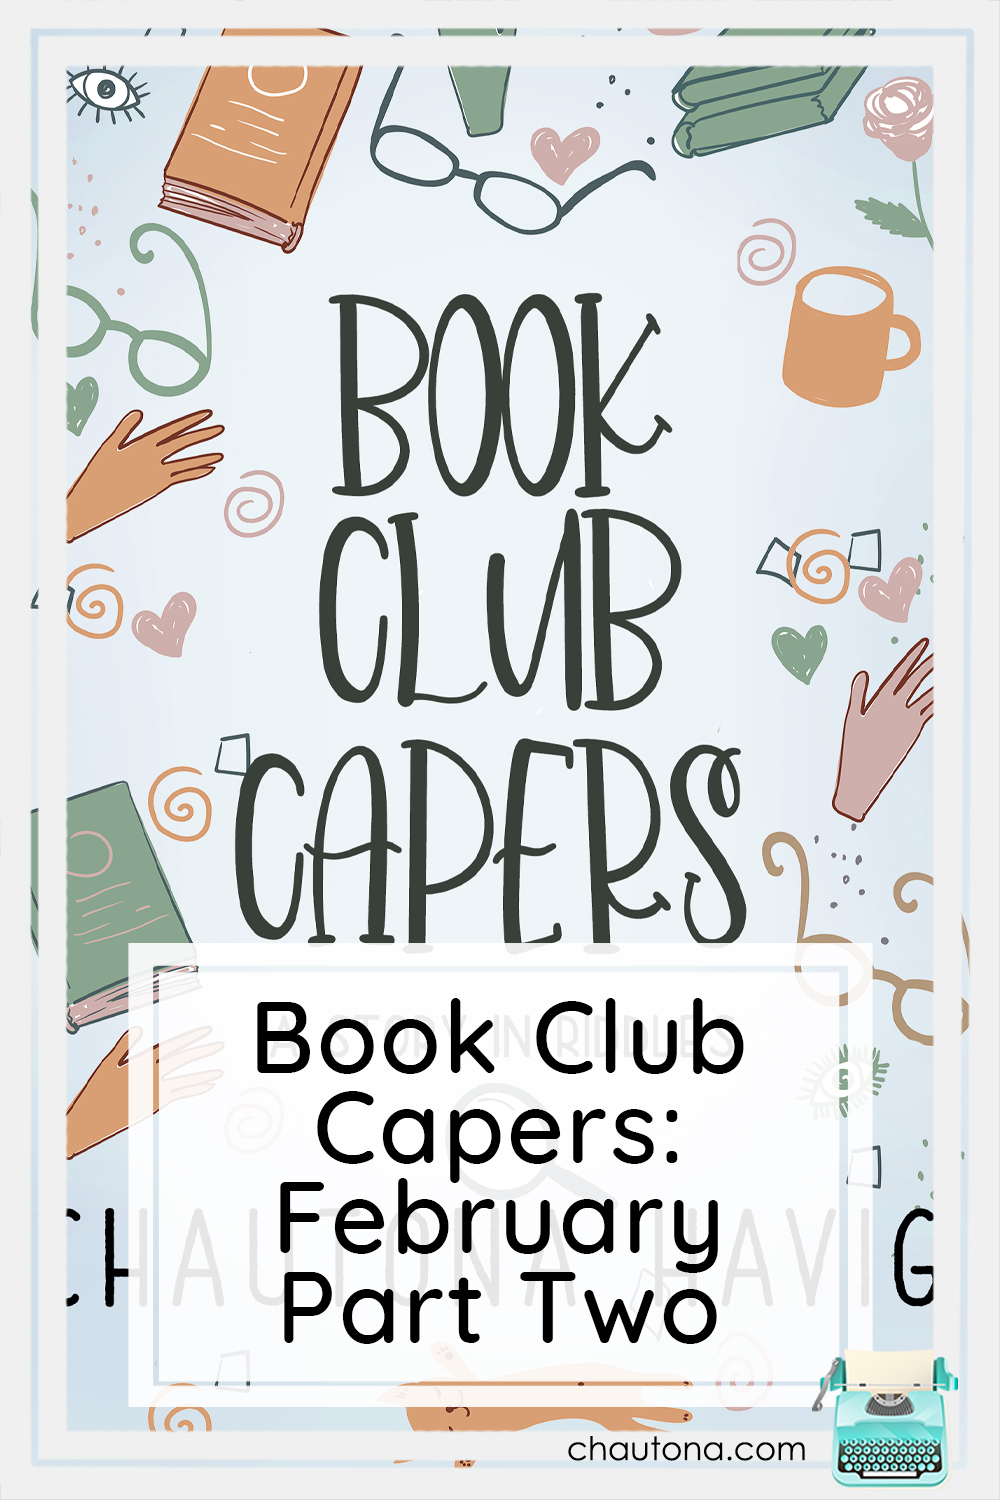 Book Club Capers